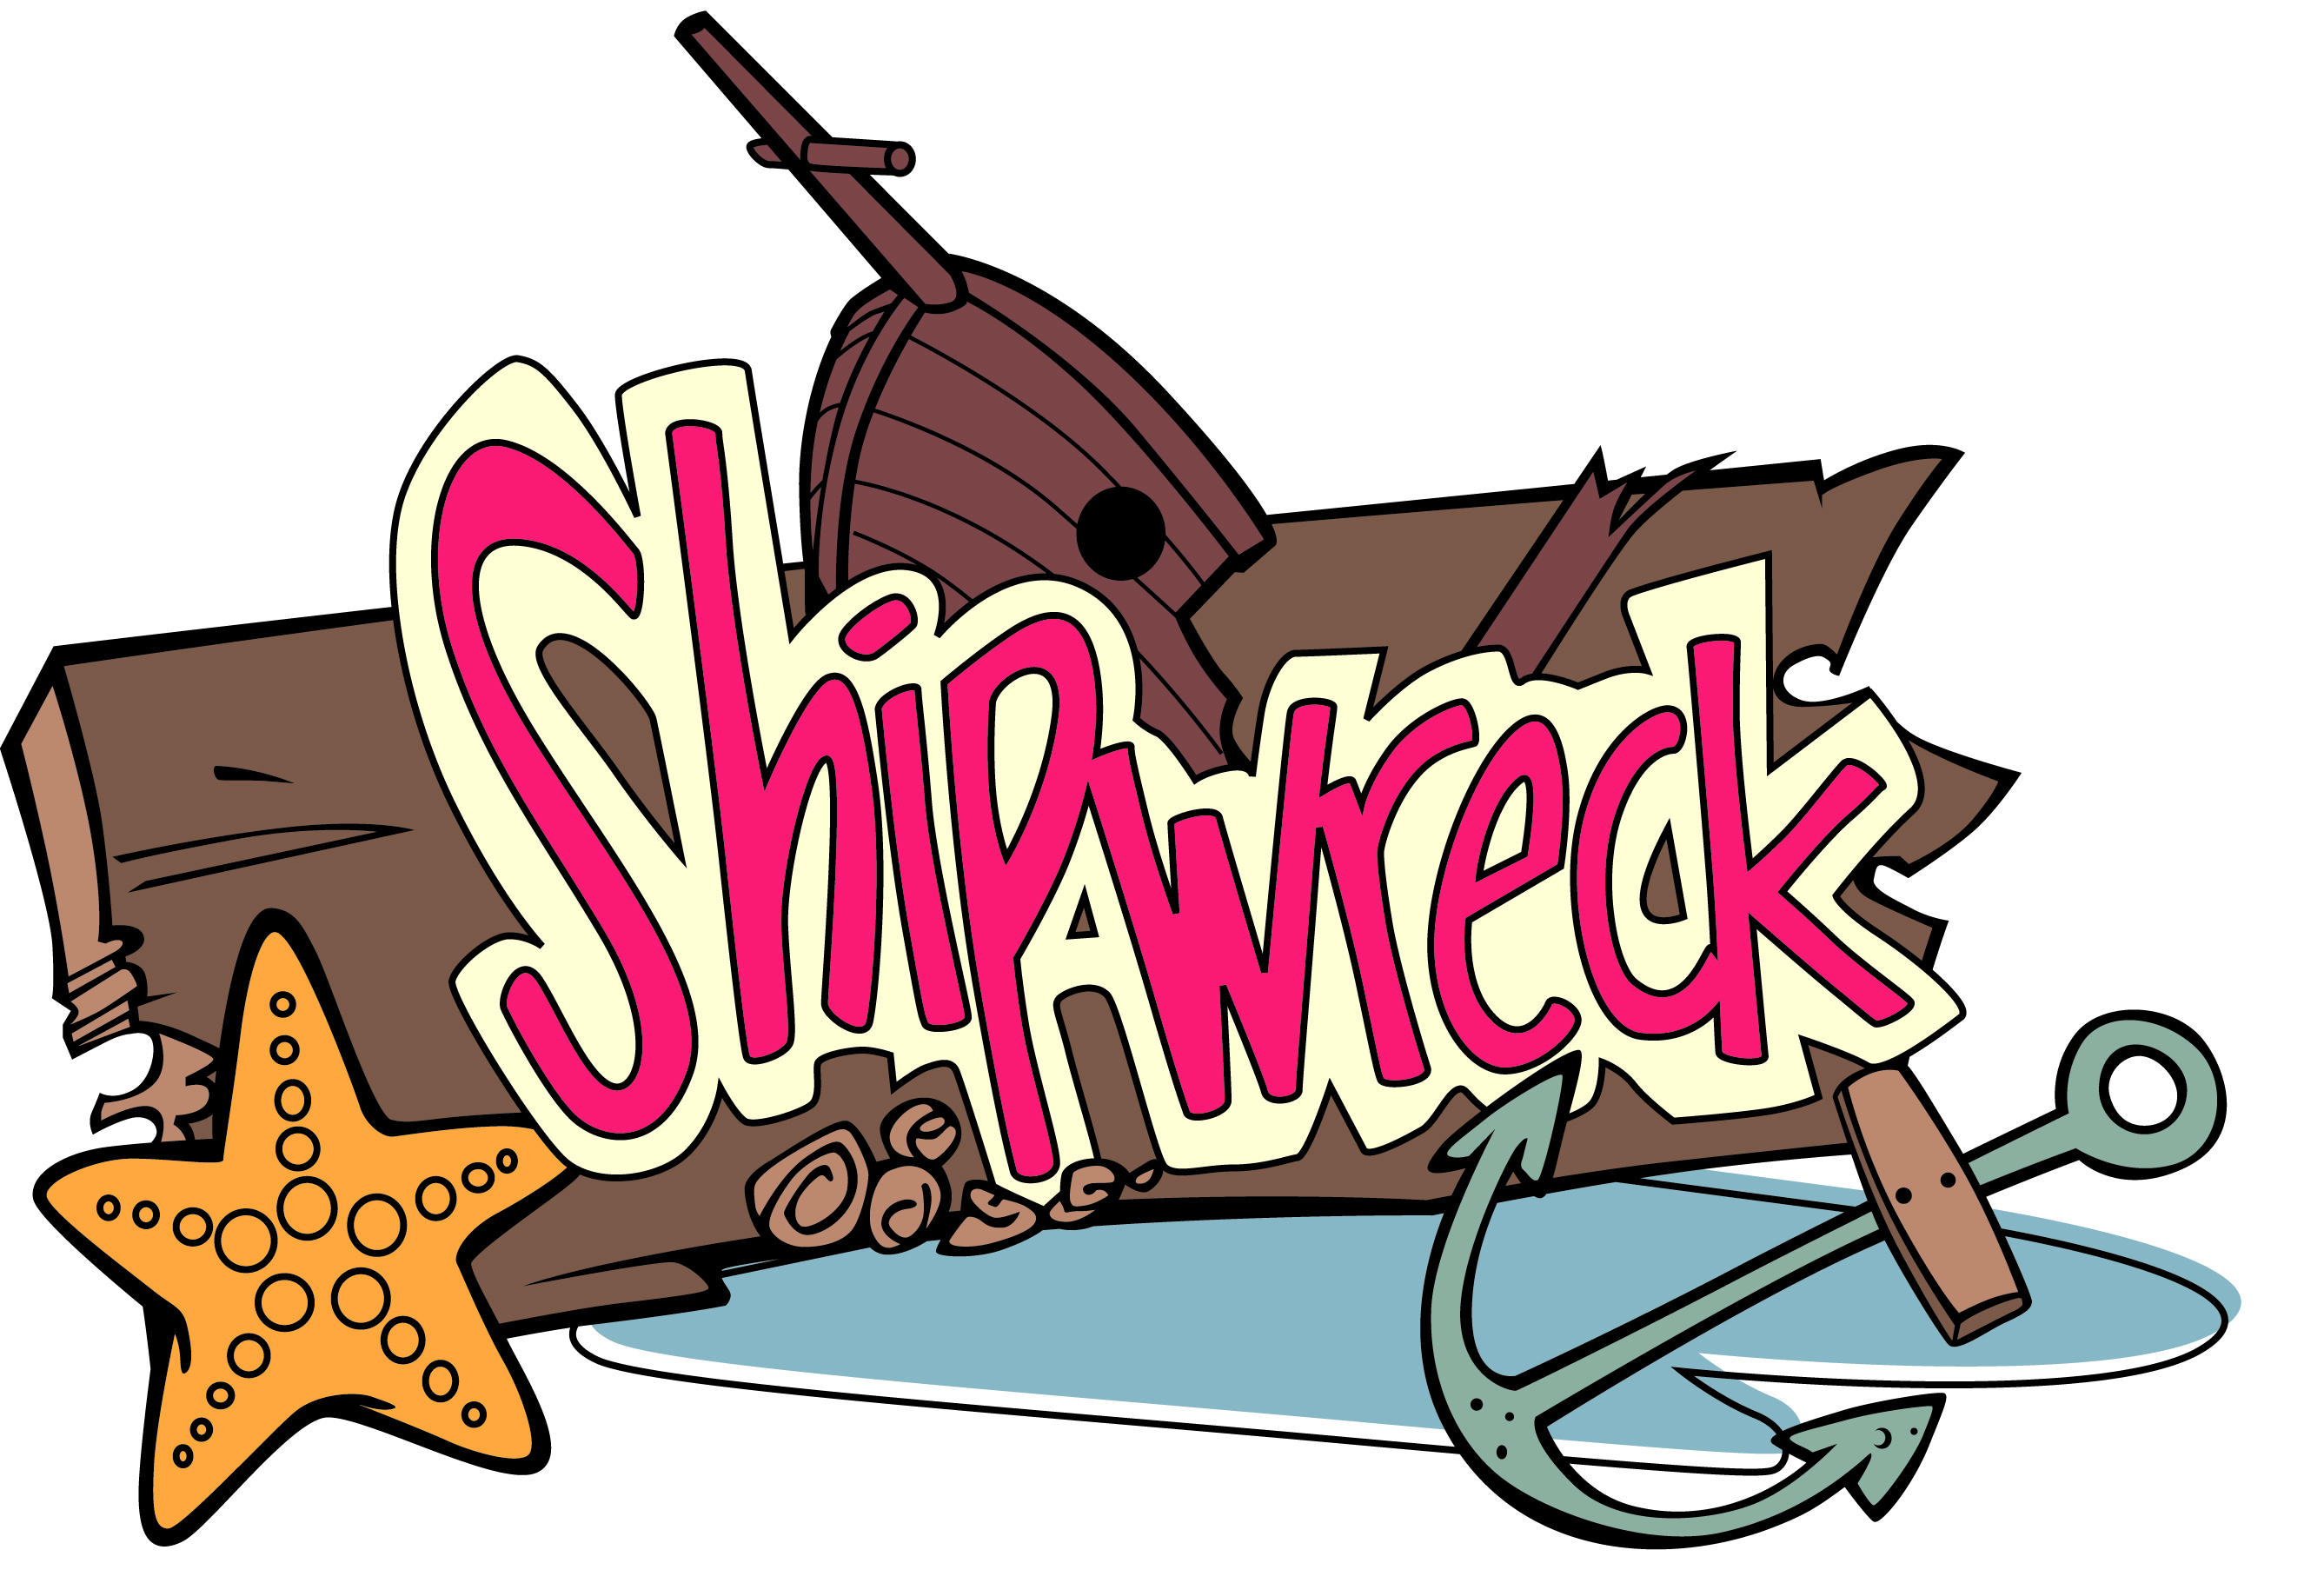 ... free vector Shipwreck cli